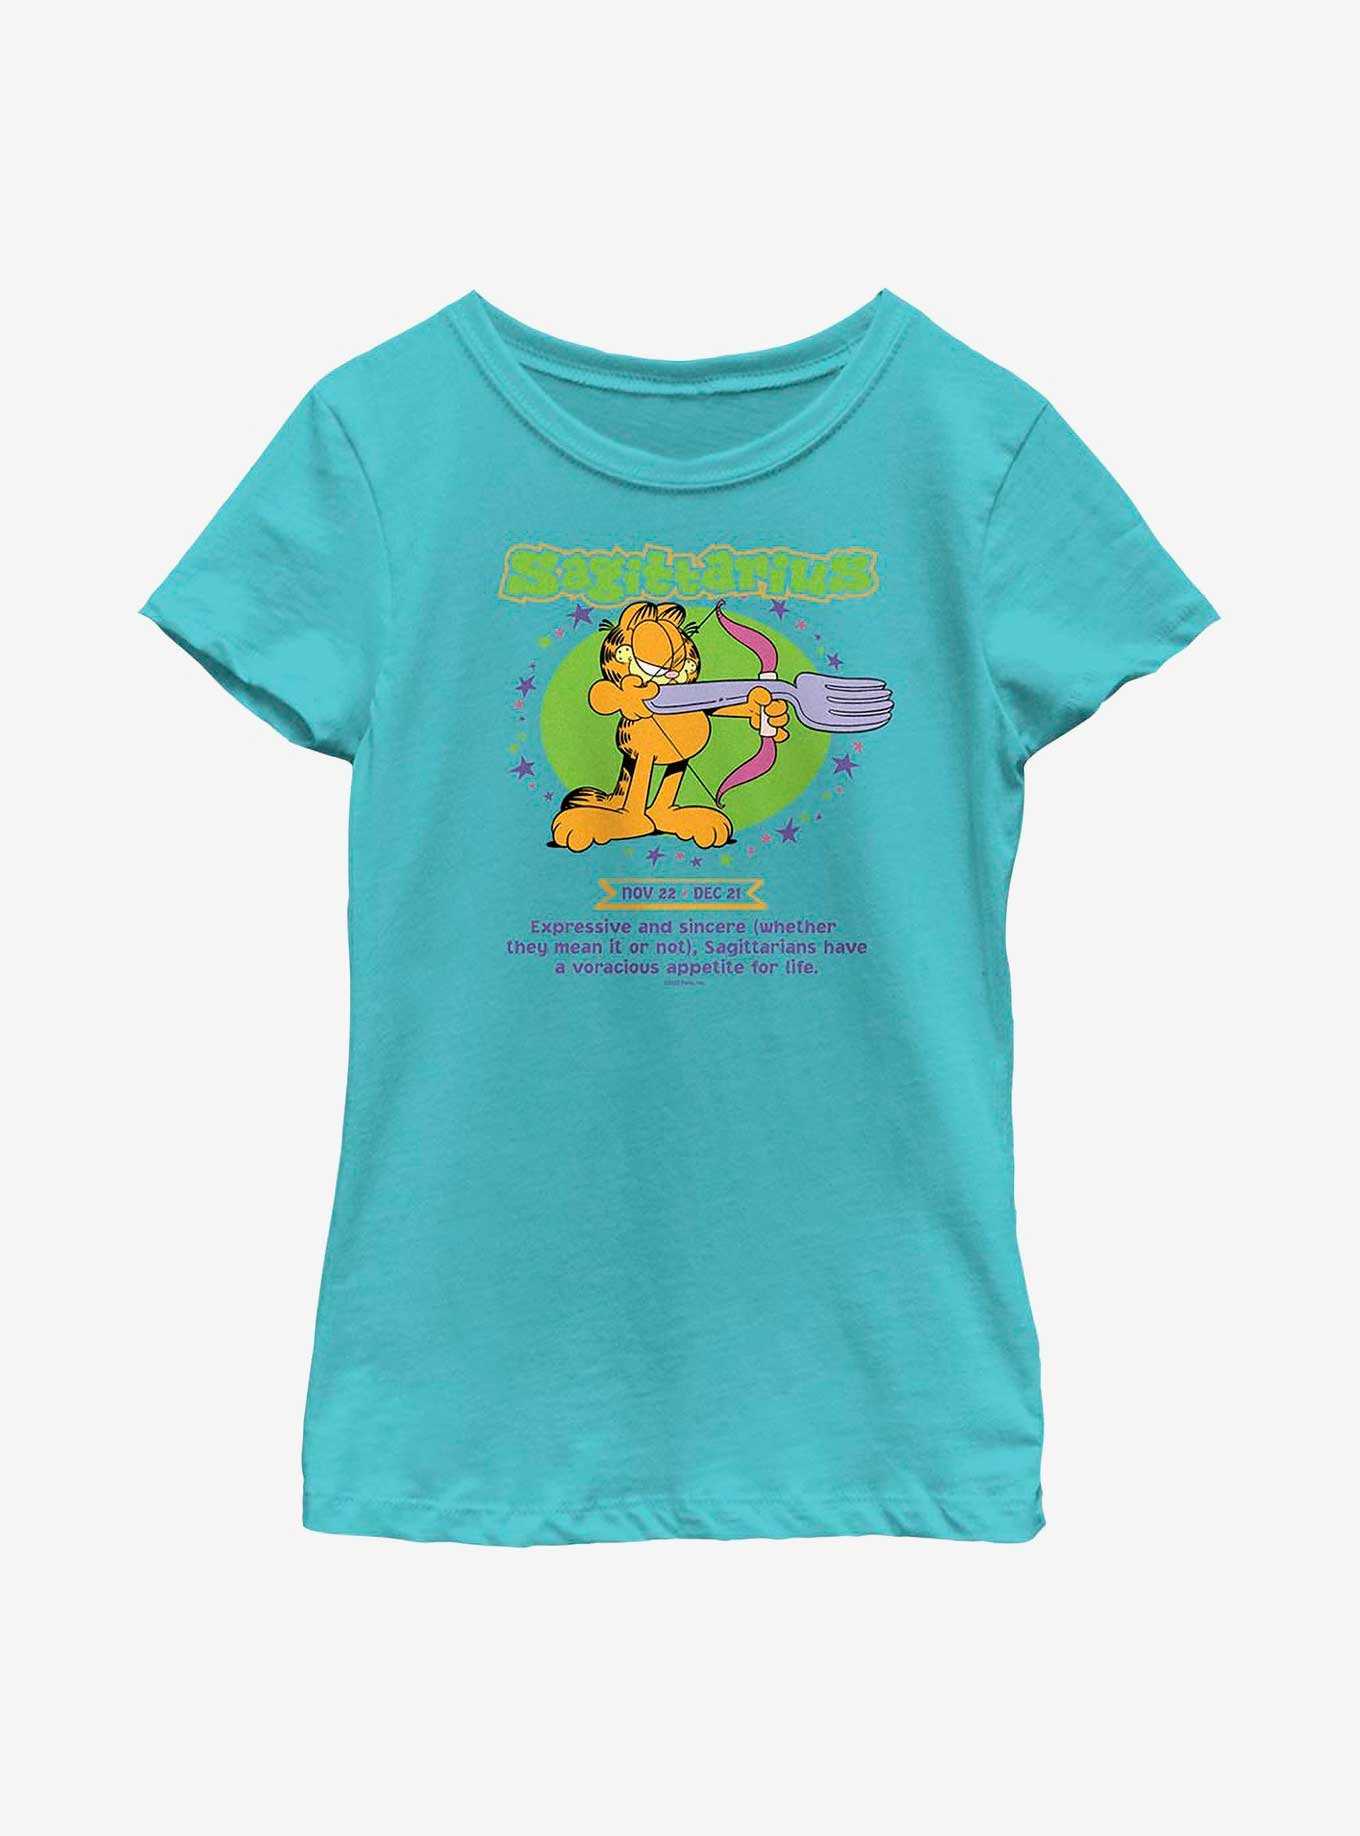 Garfield Sagittarius Horoscope Youth Girl's T-Shirt, , hi-res